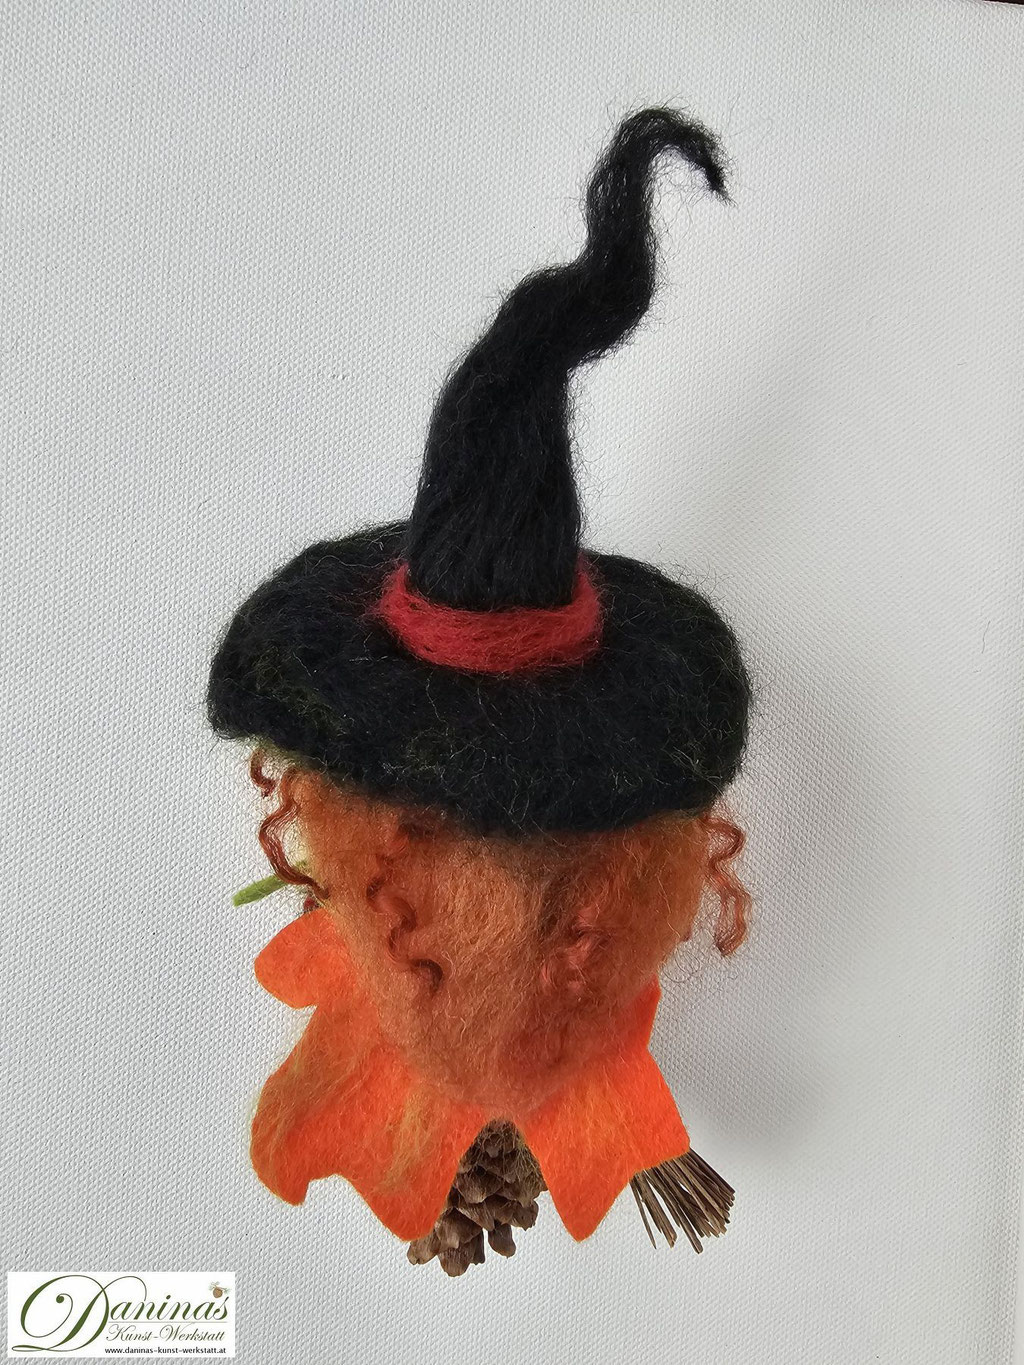 Hexe Amber Rückseite. Handgefertigte Märchenfigur aus Fichtenzapfen mit nadelgefilztem Kopf und rostroten langen Haaren aus Wolle, einem schwarz-grünen Hexenhut mit Zauberstein, einer Jacke aus Filz in Herbstfarben und einem Hexenbesen